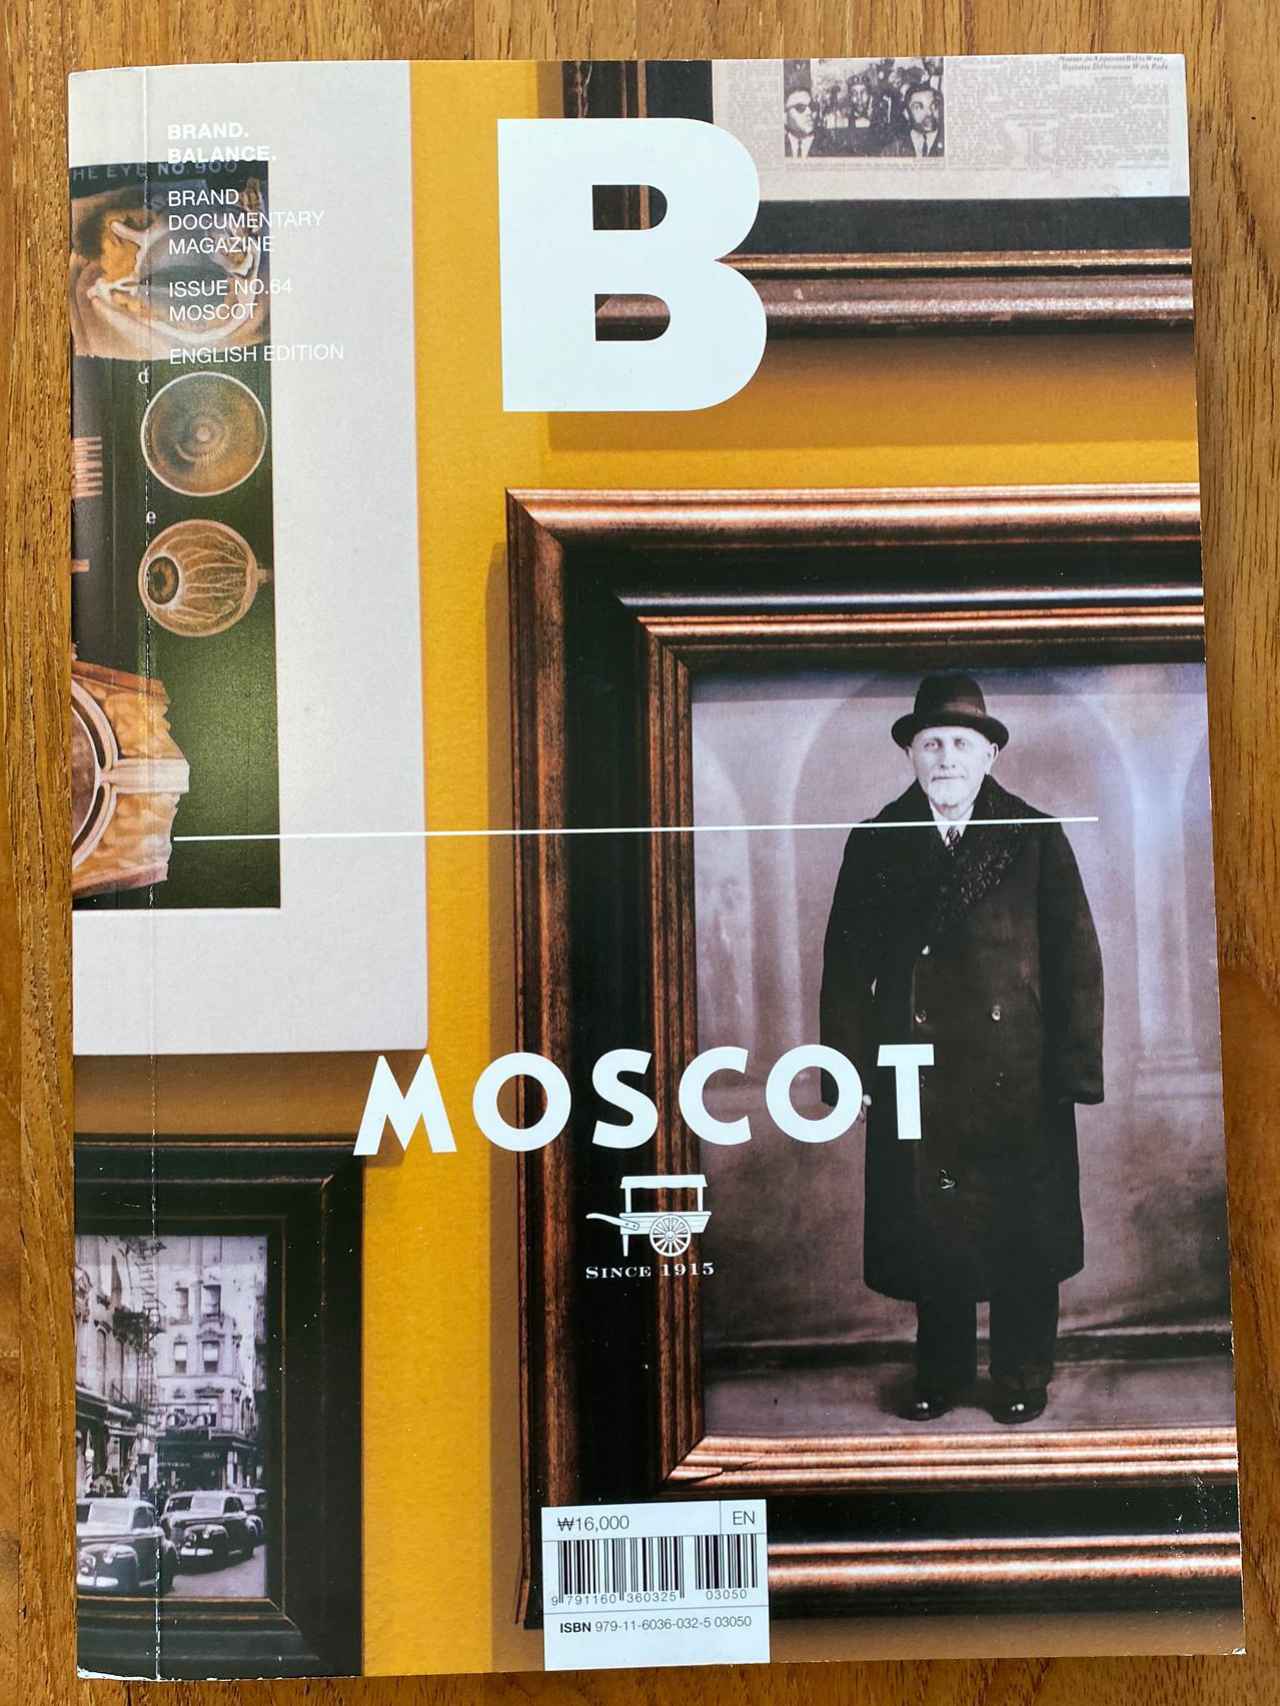 Las gafas Moscot, protagonistas de la portada de la revista 'B (Brand Documentary Magazine)'.